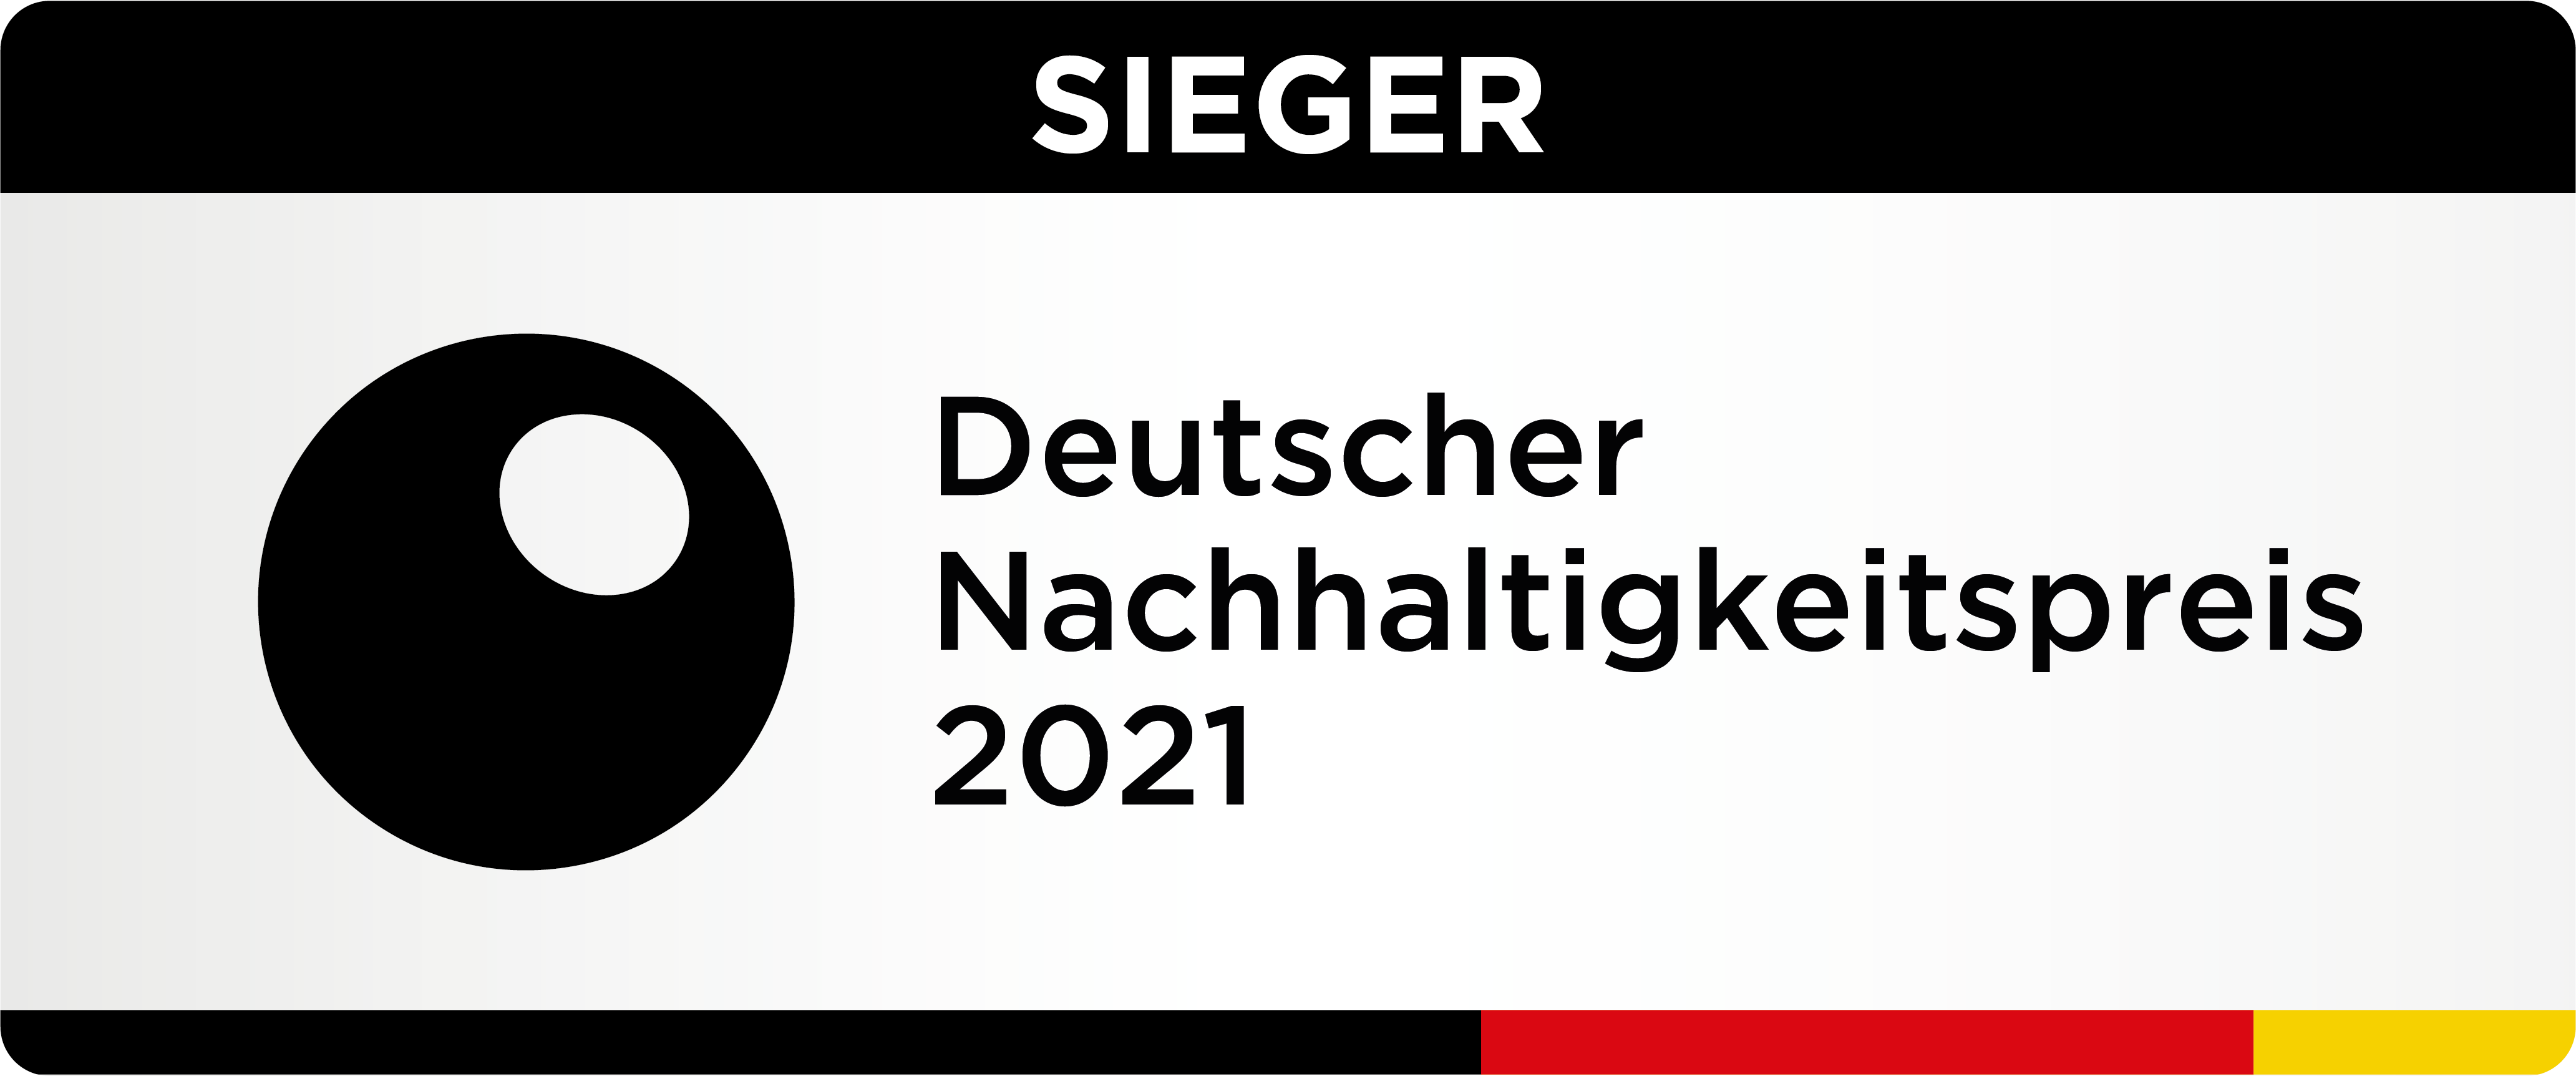 Sieger - Deutscher Nachhaltigkeitspreis 2021